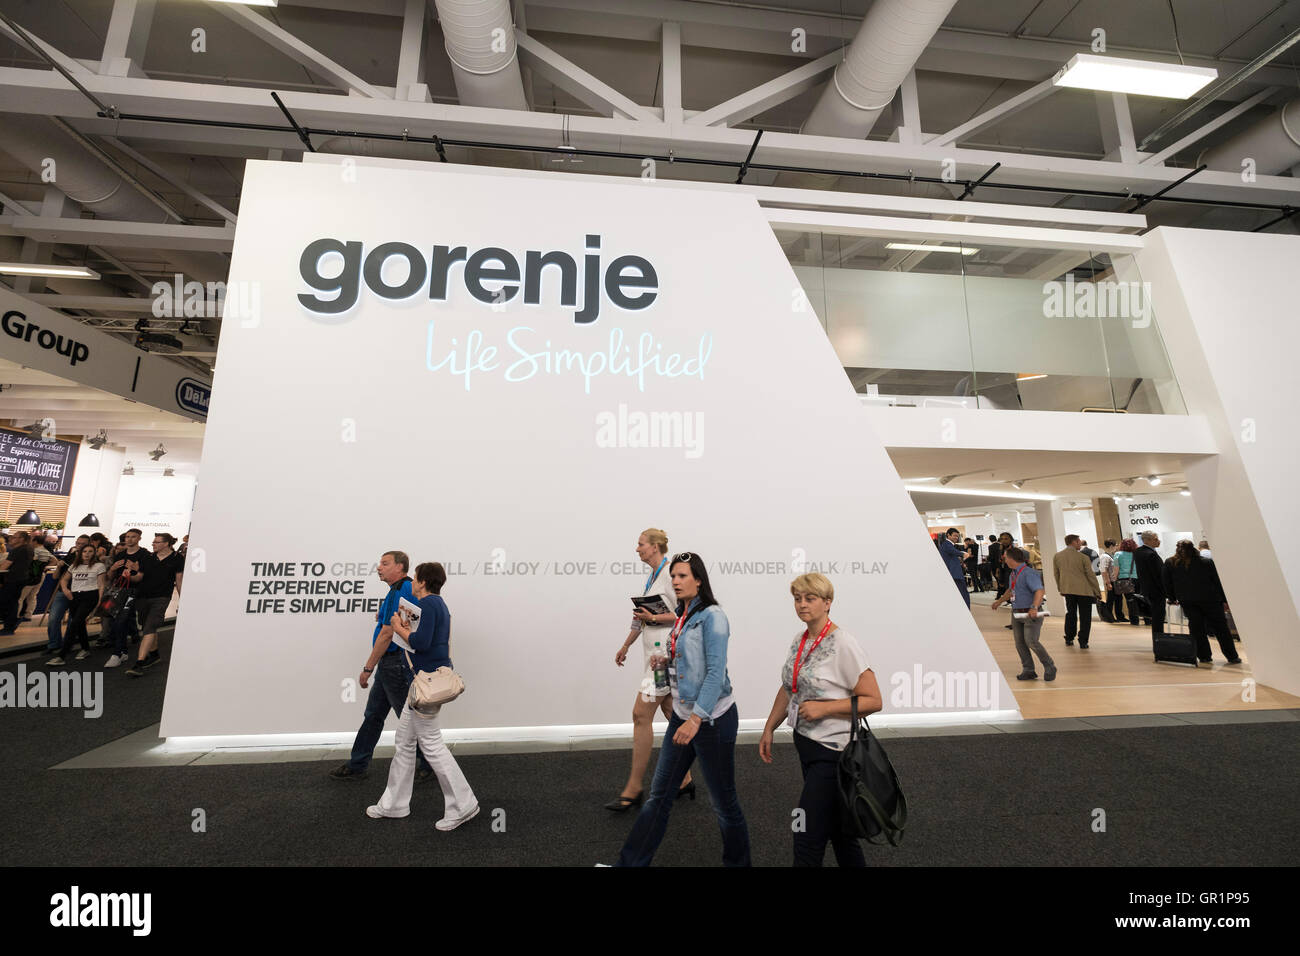 Gorenje fabricant d'appareils ménagers s'élèvent à 2016 IFA (Internationale Funkausstellung Berlin), Berlin, Allemagne Banque D'Images